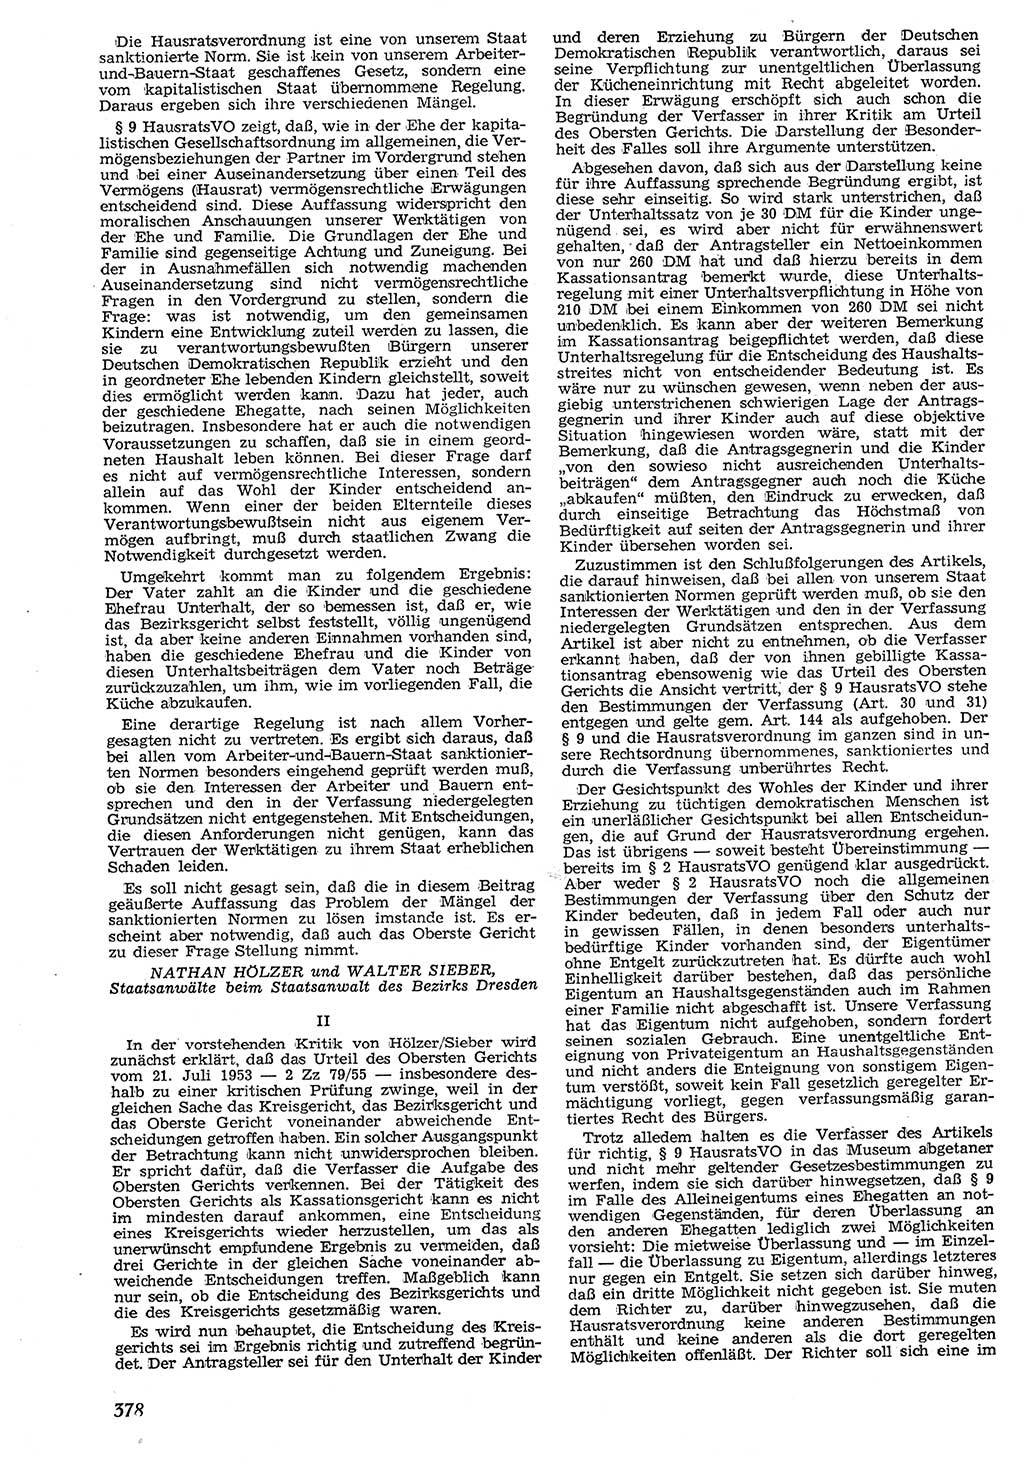 Neue Justiz (NJ), Zeitschrift für Recht und Rechtswissenschaft [Deutsche Demokratische Republik (DDR)], 10. Jahrgang 1956, Seite 378 (NJ DDR 1956, S. 378)